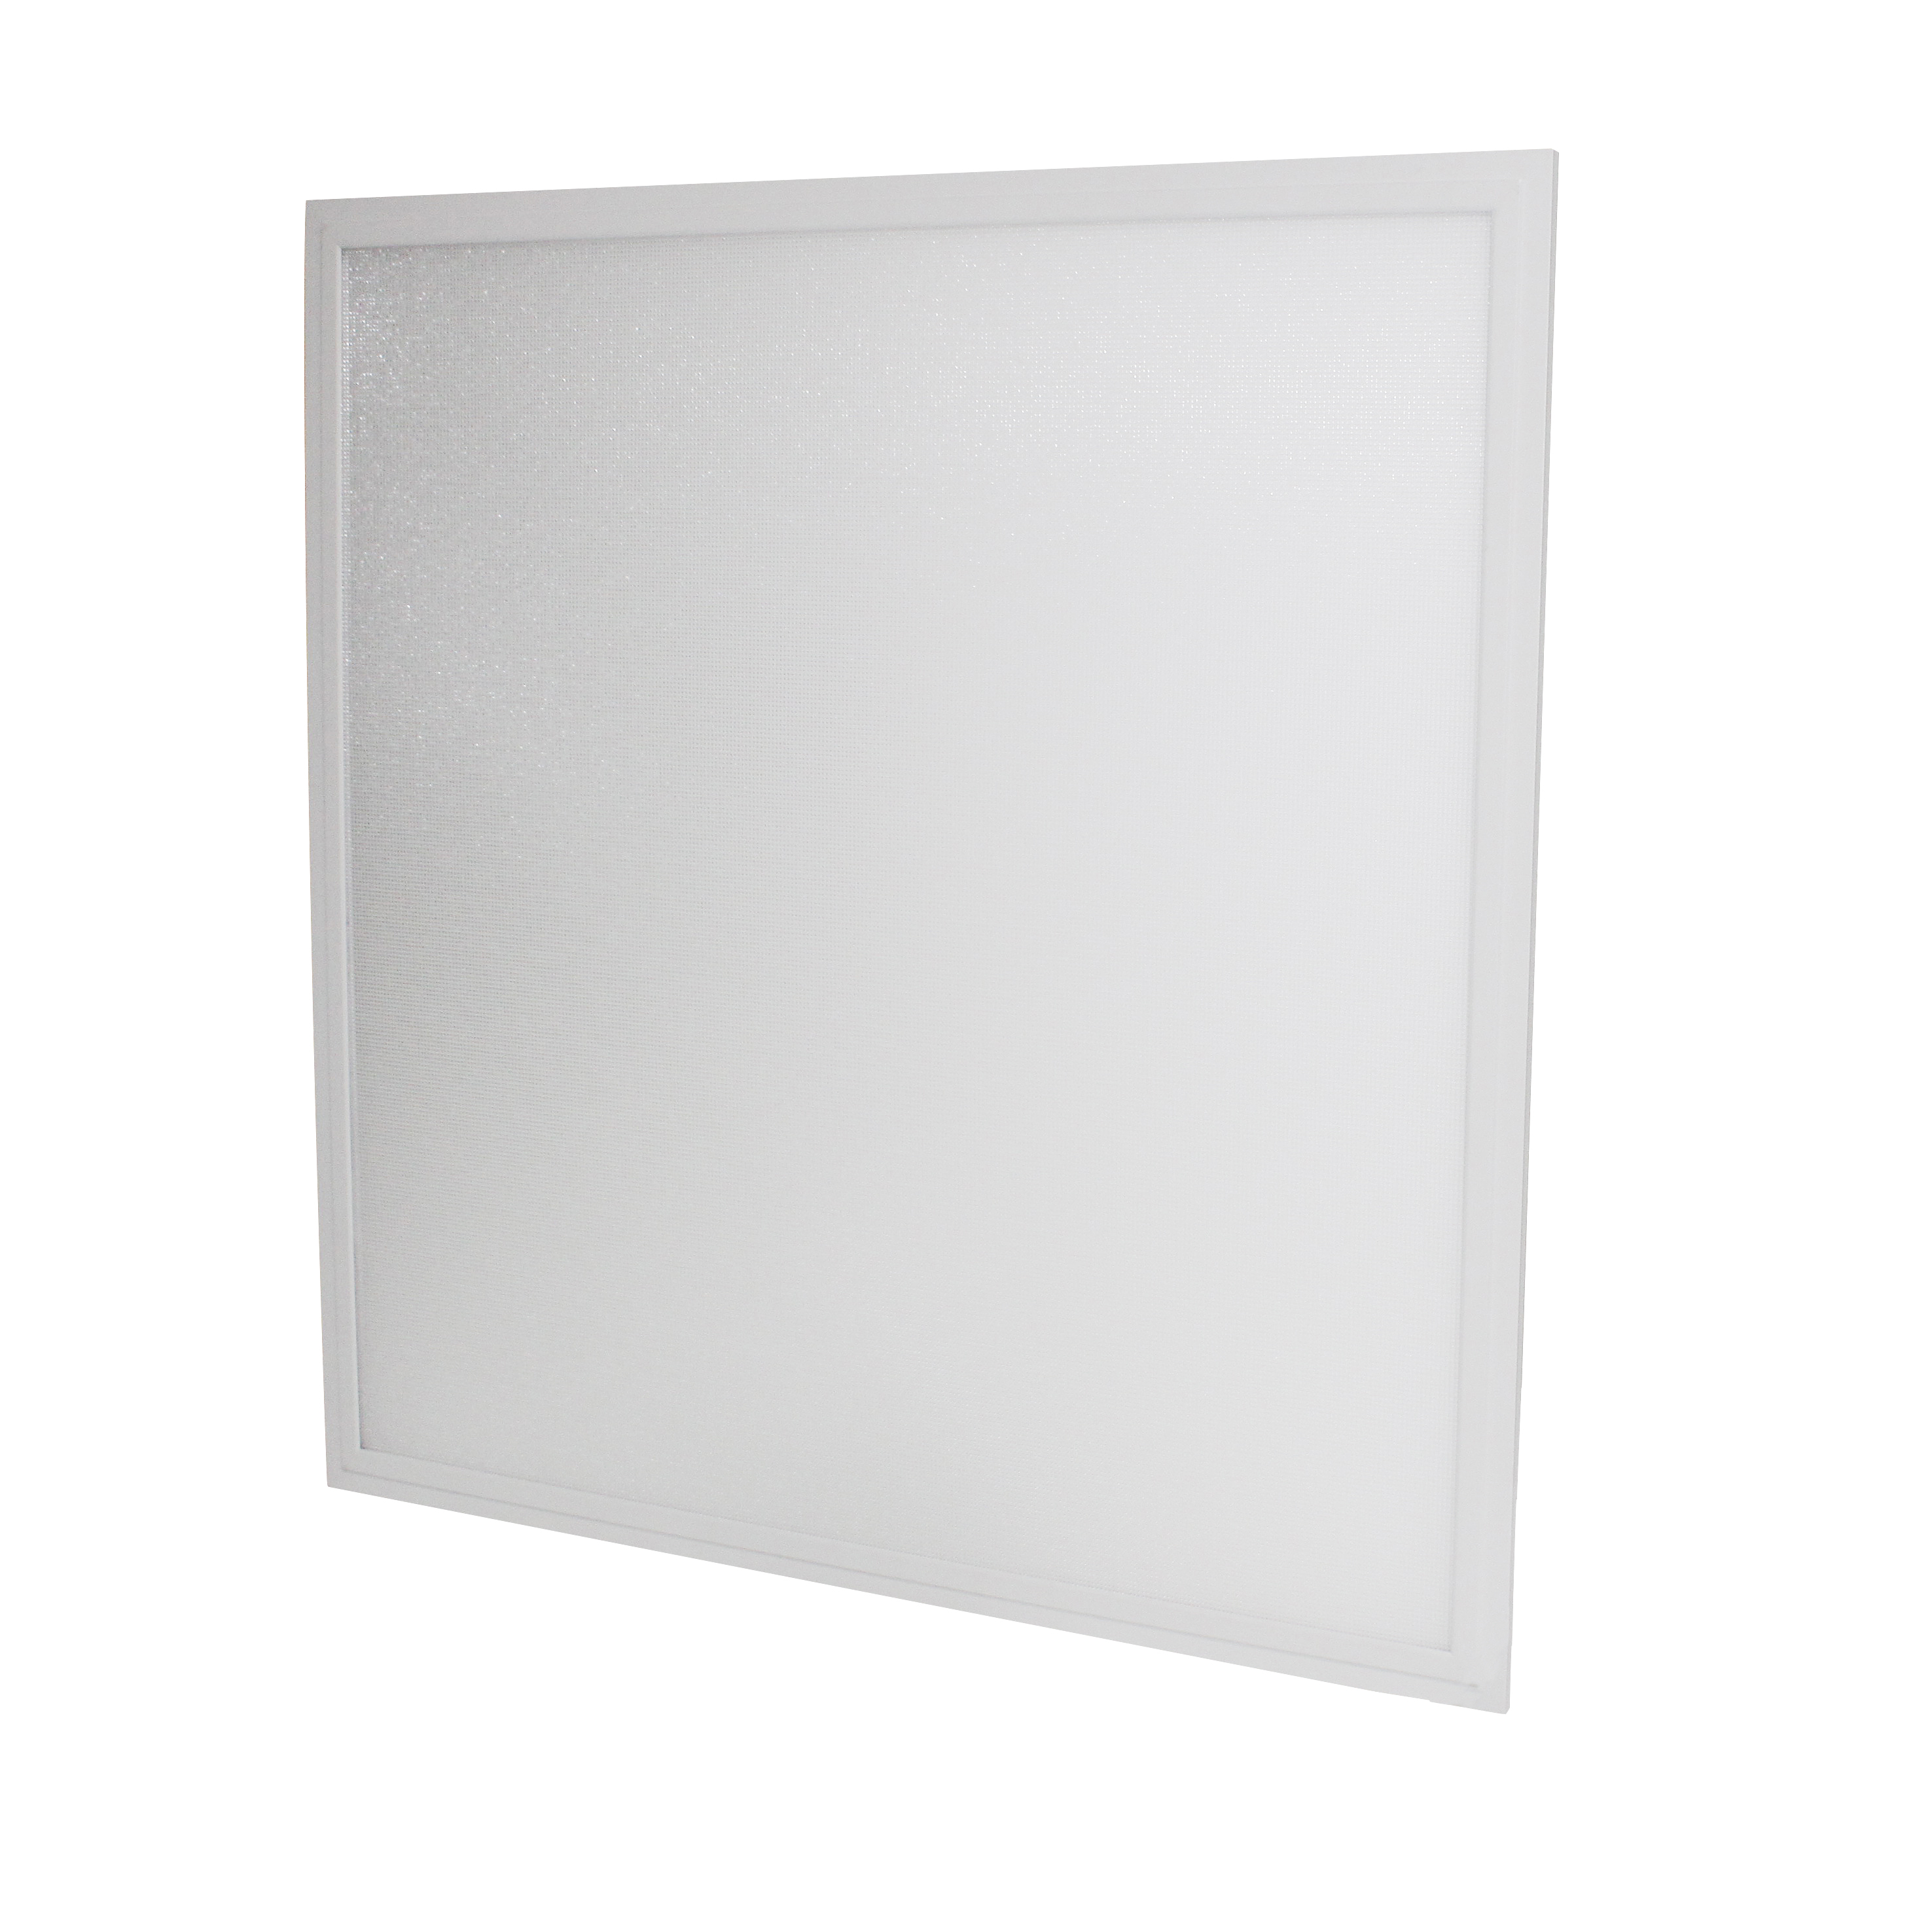 LED-Panel Multi Pro 4, 15-40 W, weiß 830, 620x620 mm, 120 lm/W, geeignet für Bildschirmarbeitsplätze